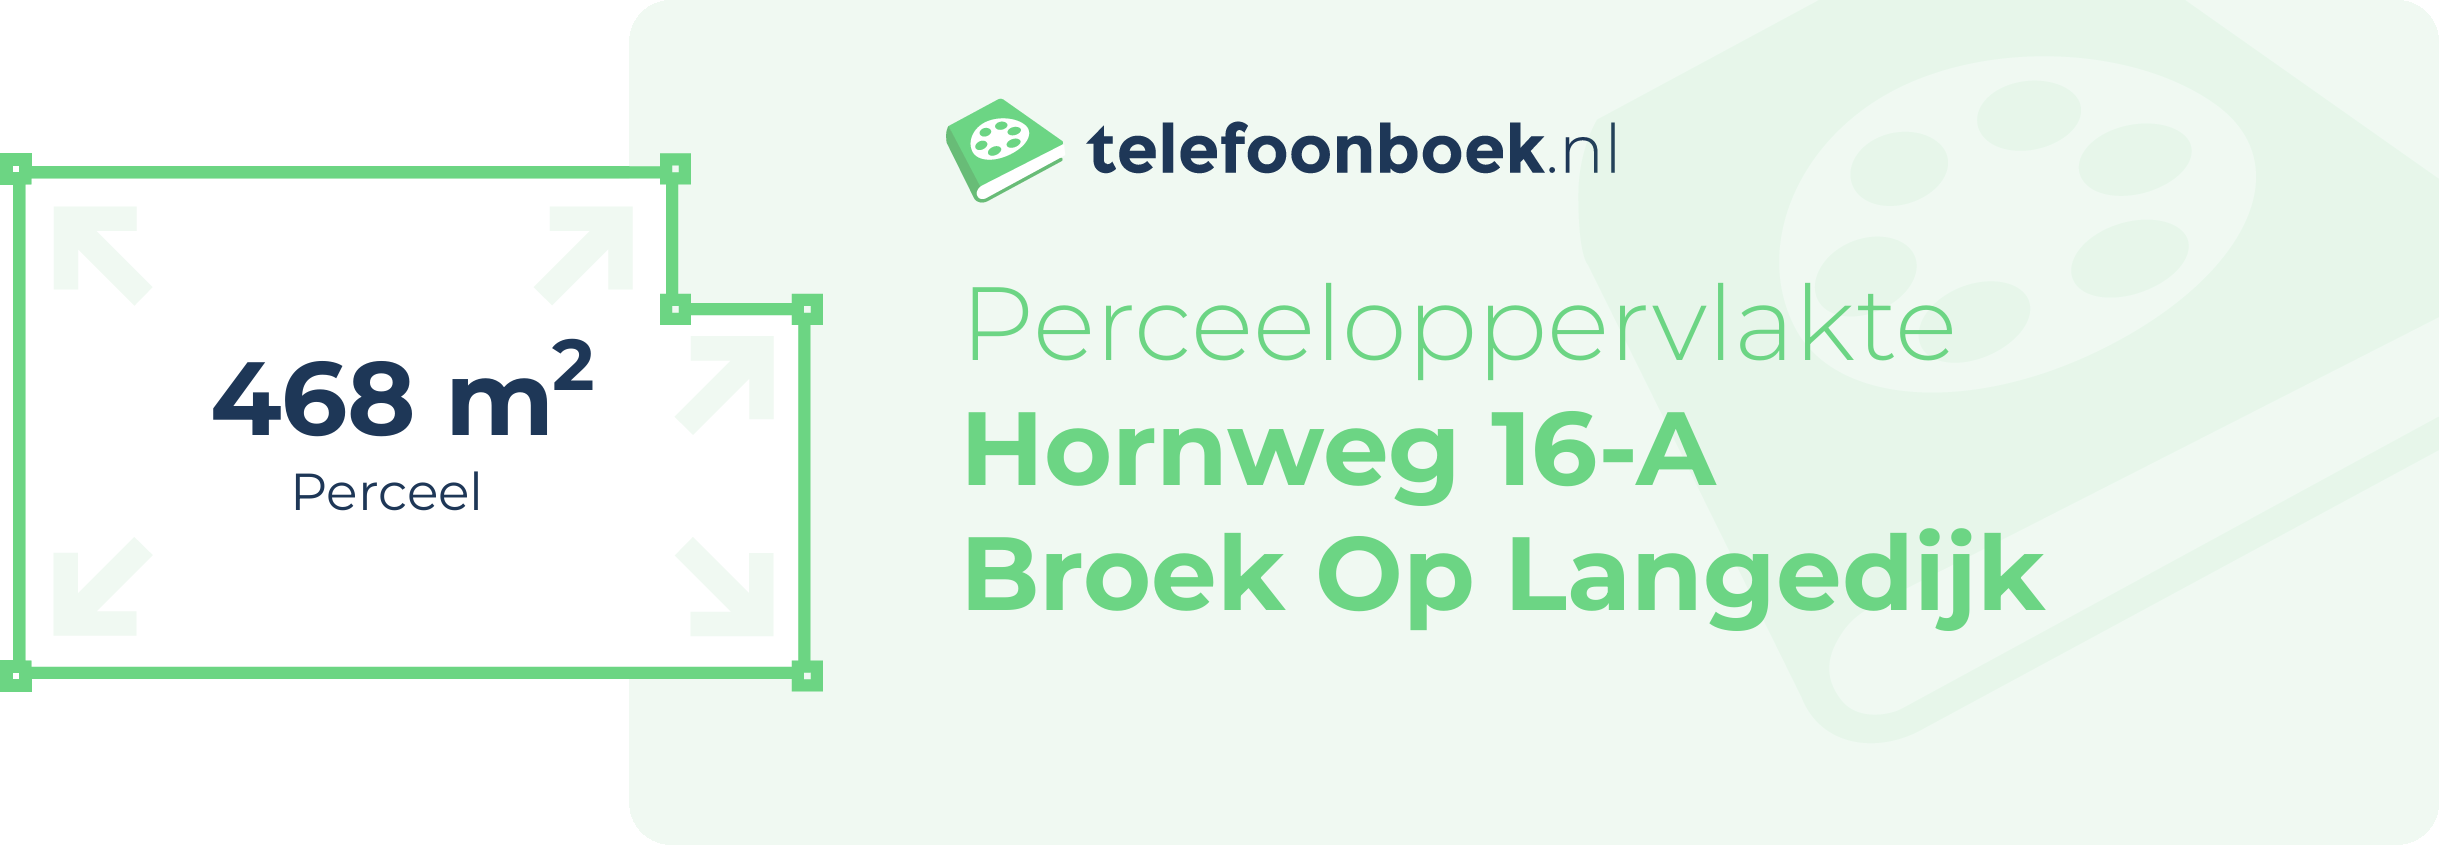 Perceeloppervlakte Hornweg 16-A Broek Op Langedijk